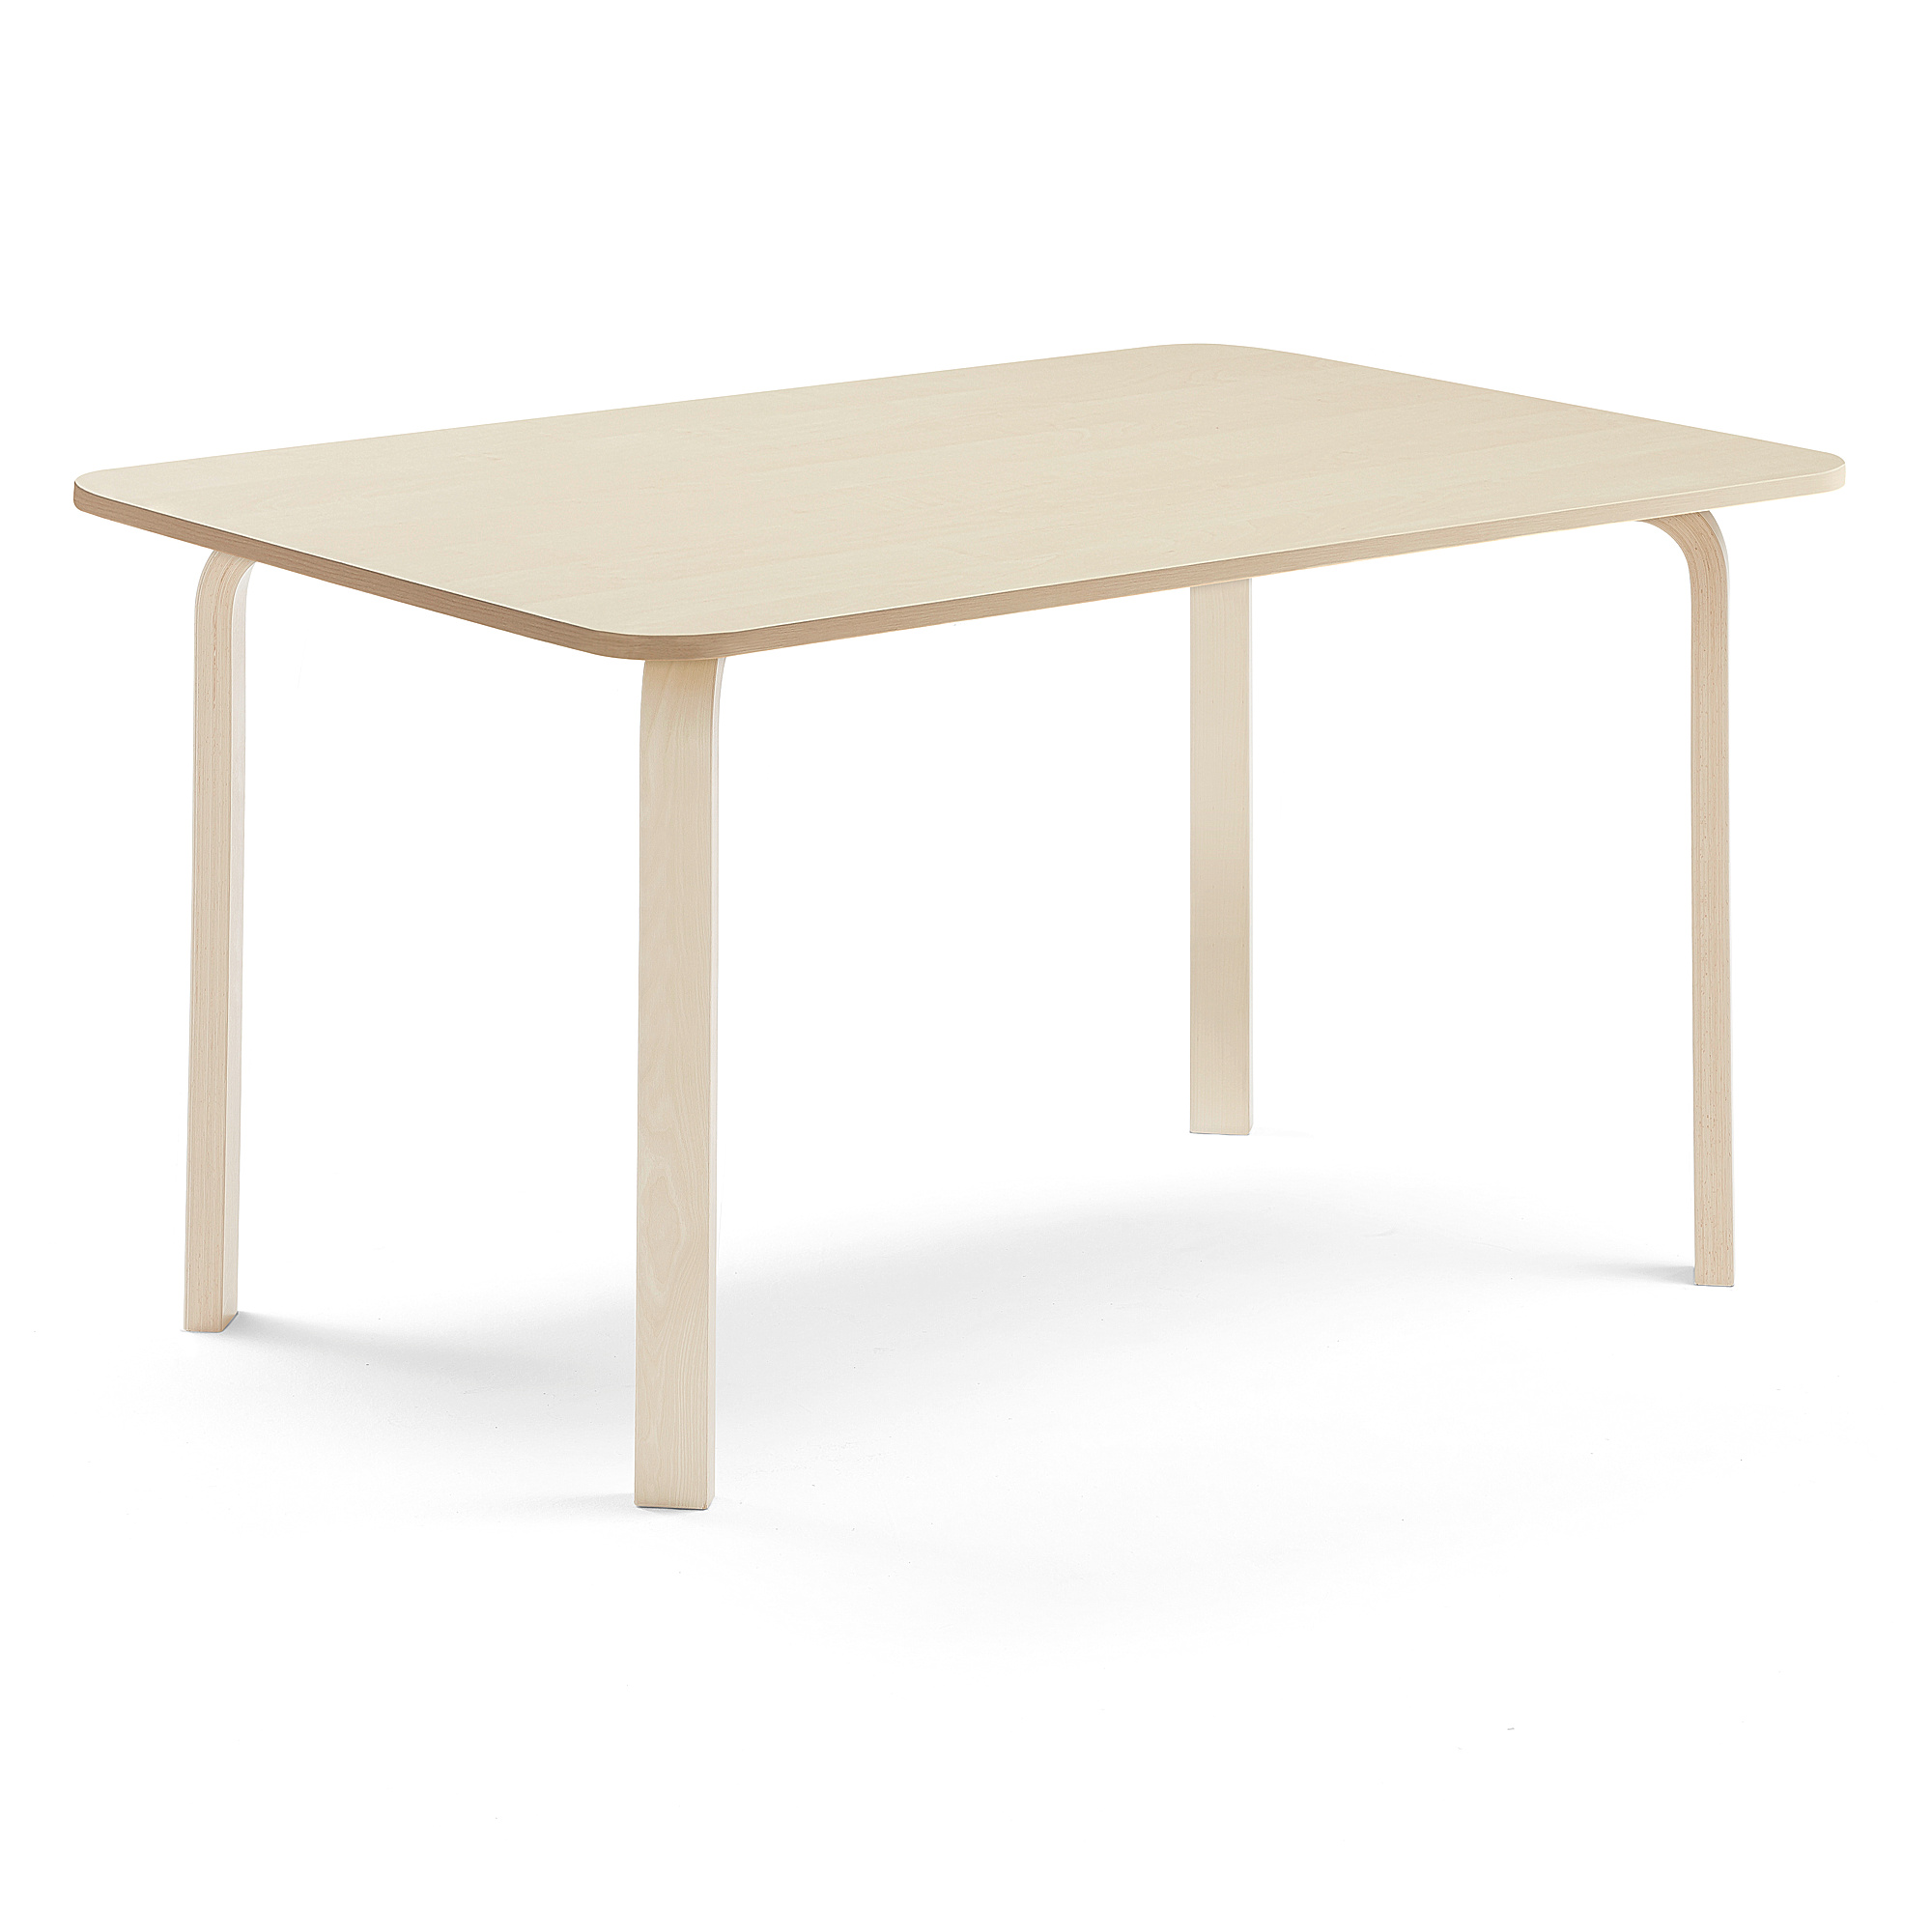 Stůl ELTON, 1800x700x710 mm, bříza, akustická HPL deska, bříza